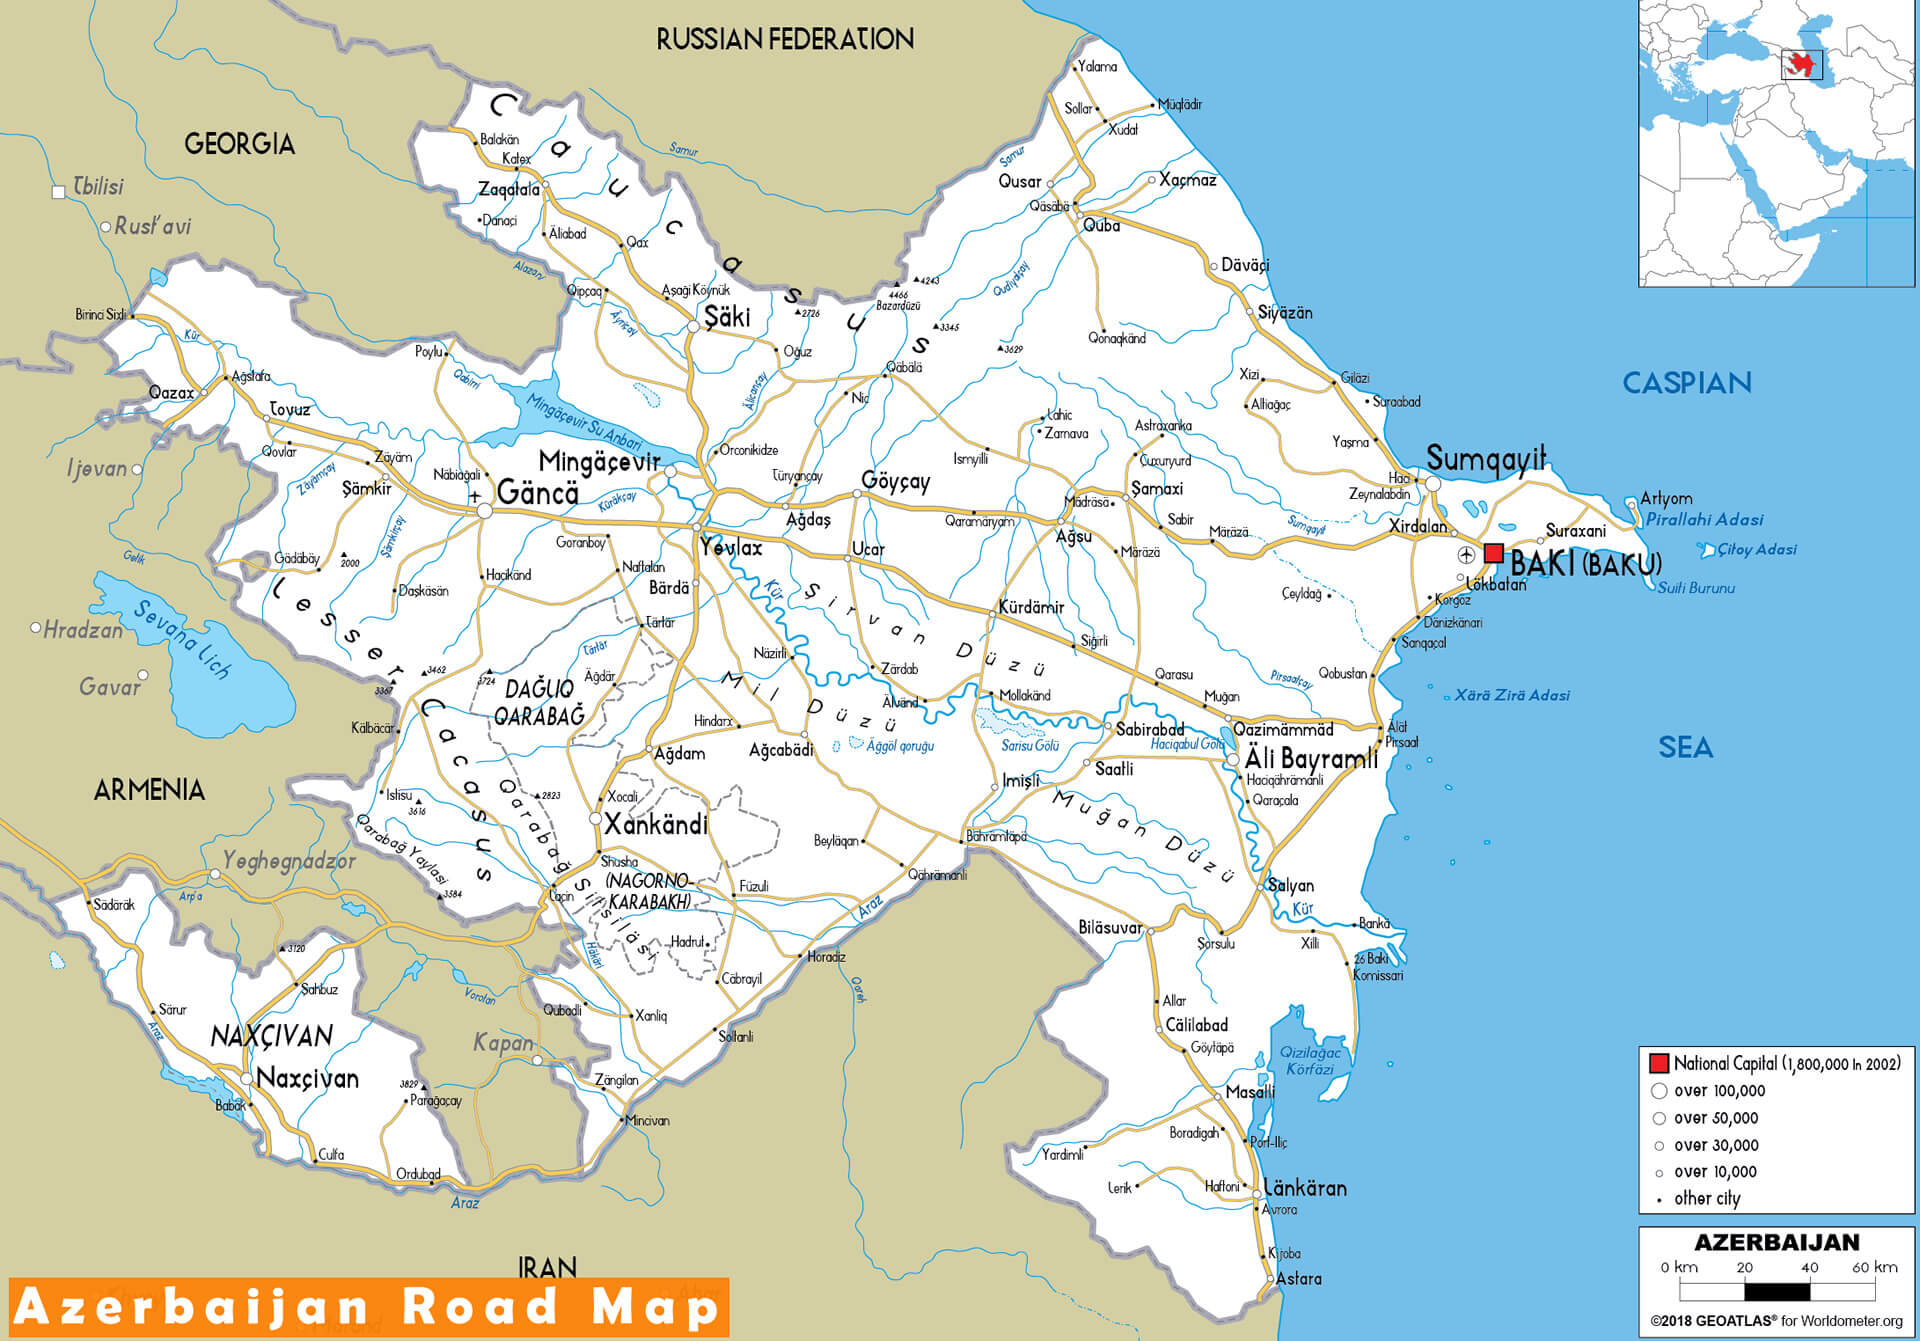 Azerbaijan Road Map